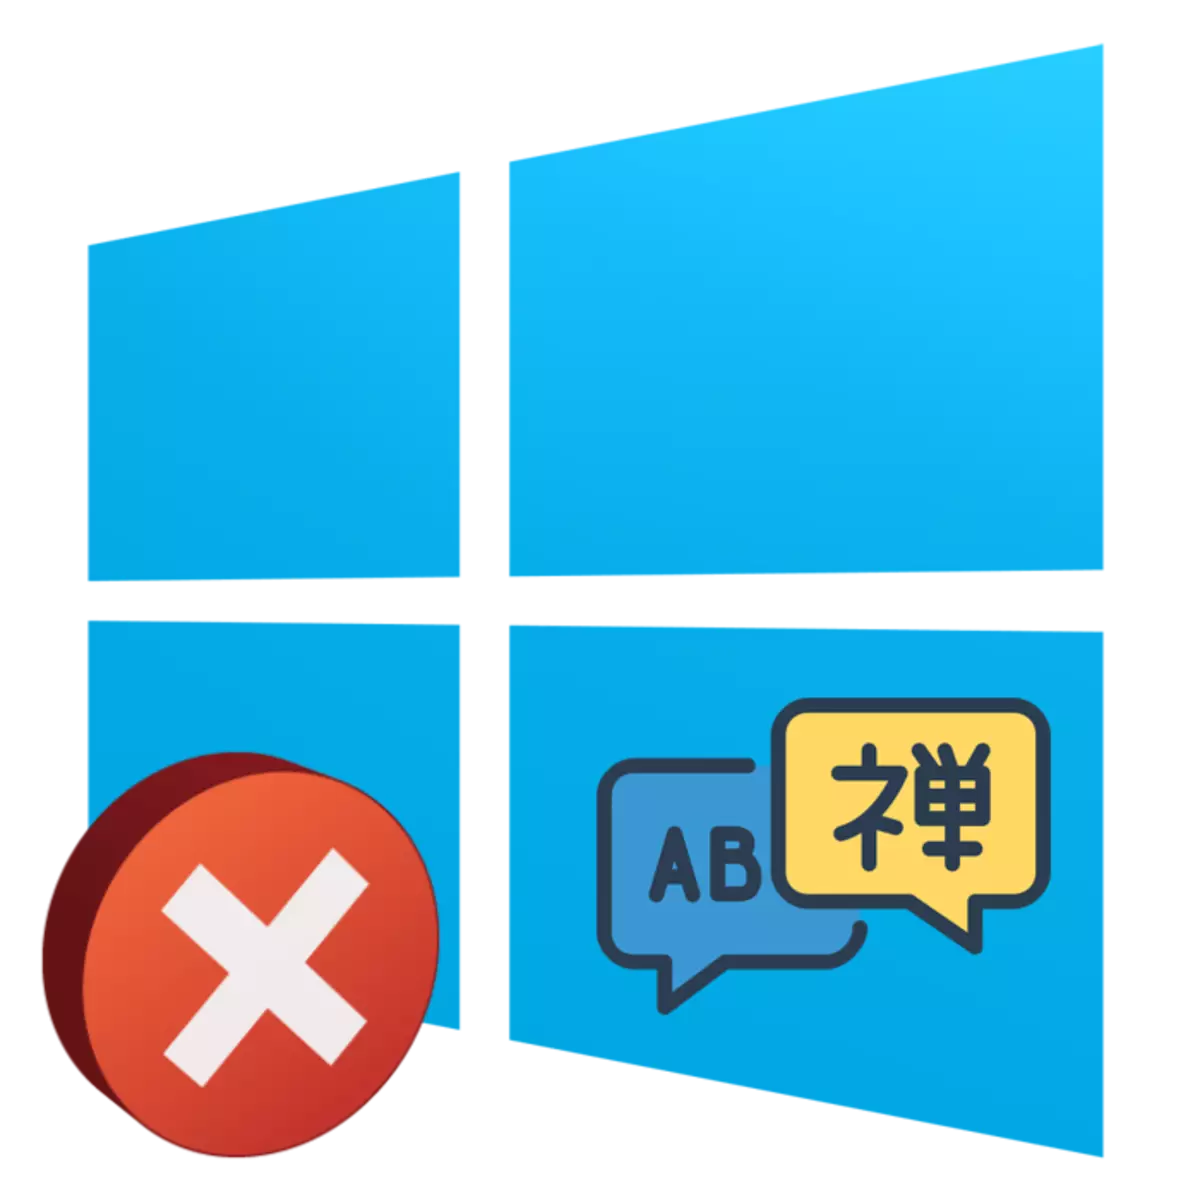 Langue sur le clavier sous Windows 10